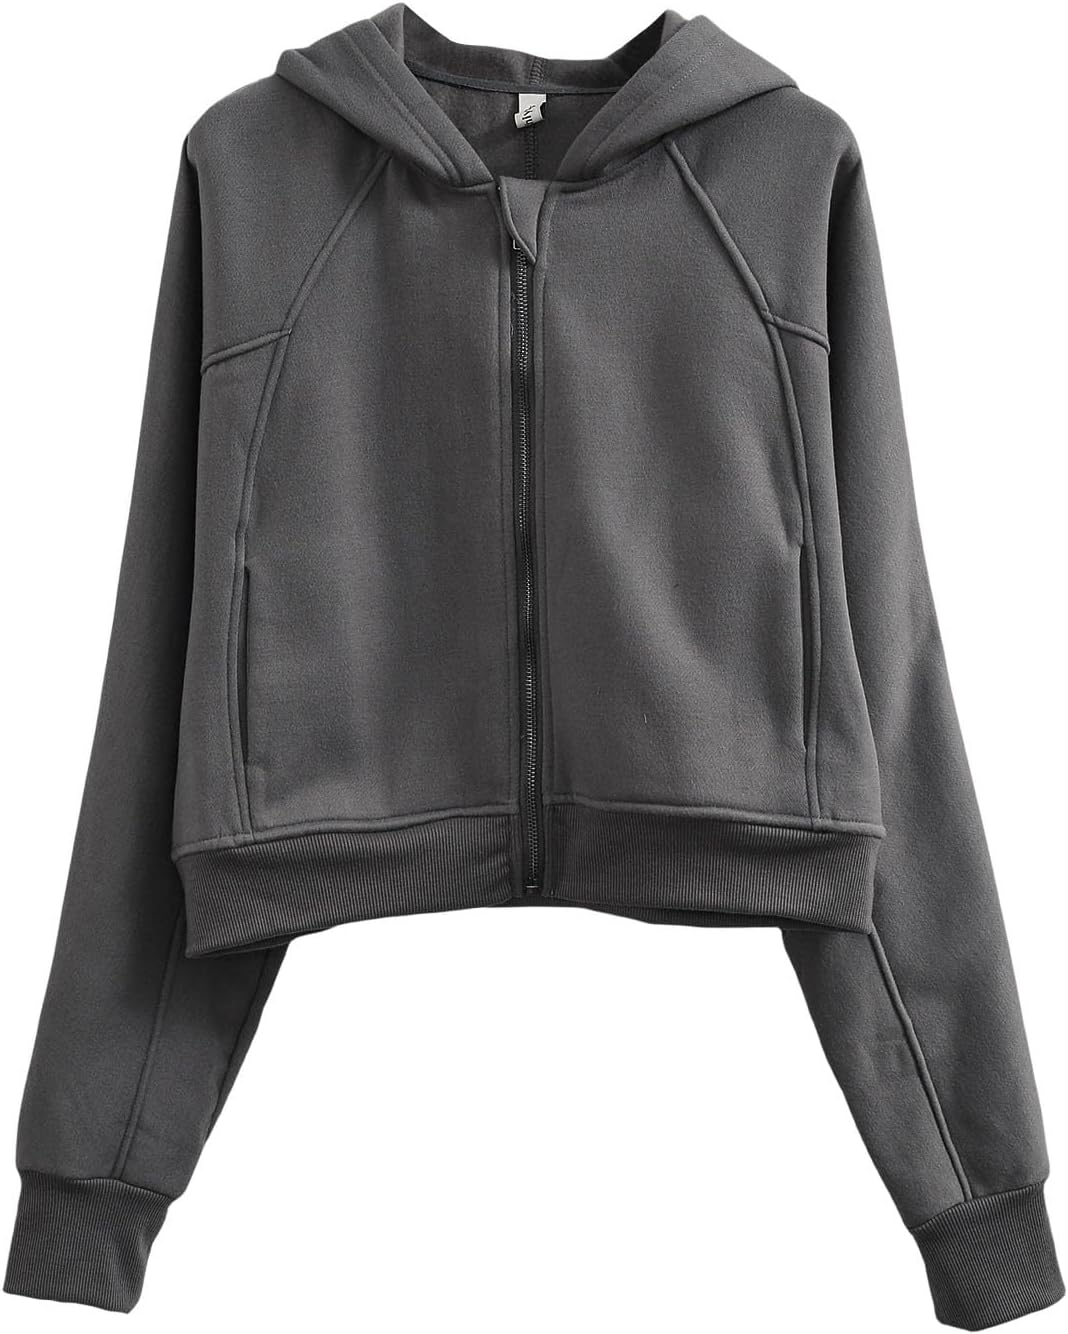 NTG Fad Ash / Medium Women' s Fleece Oversized Full-Zip Cropped Hoodie